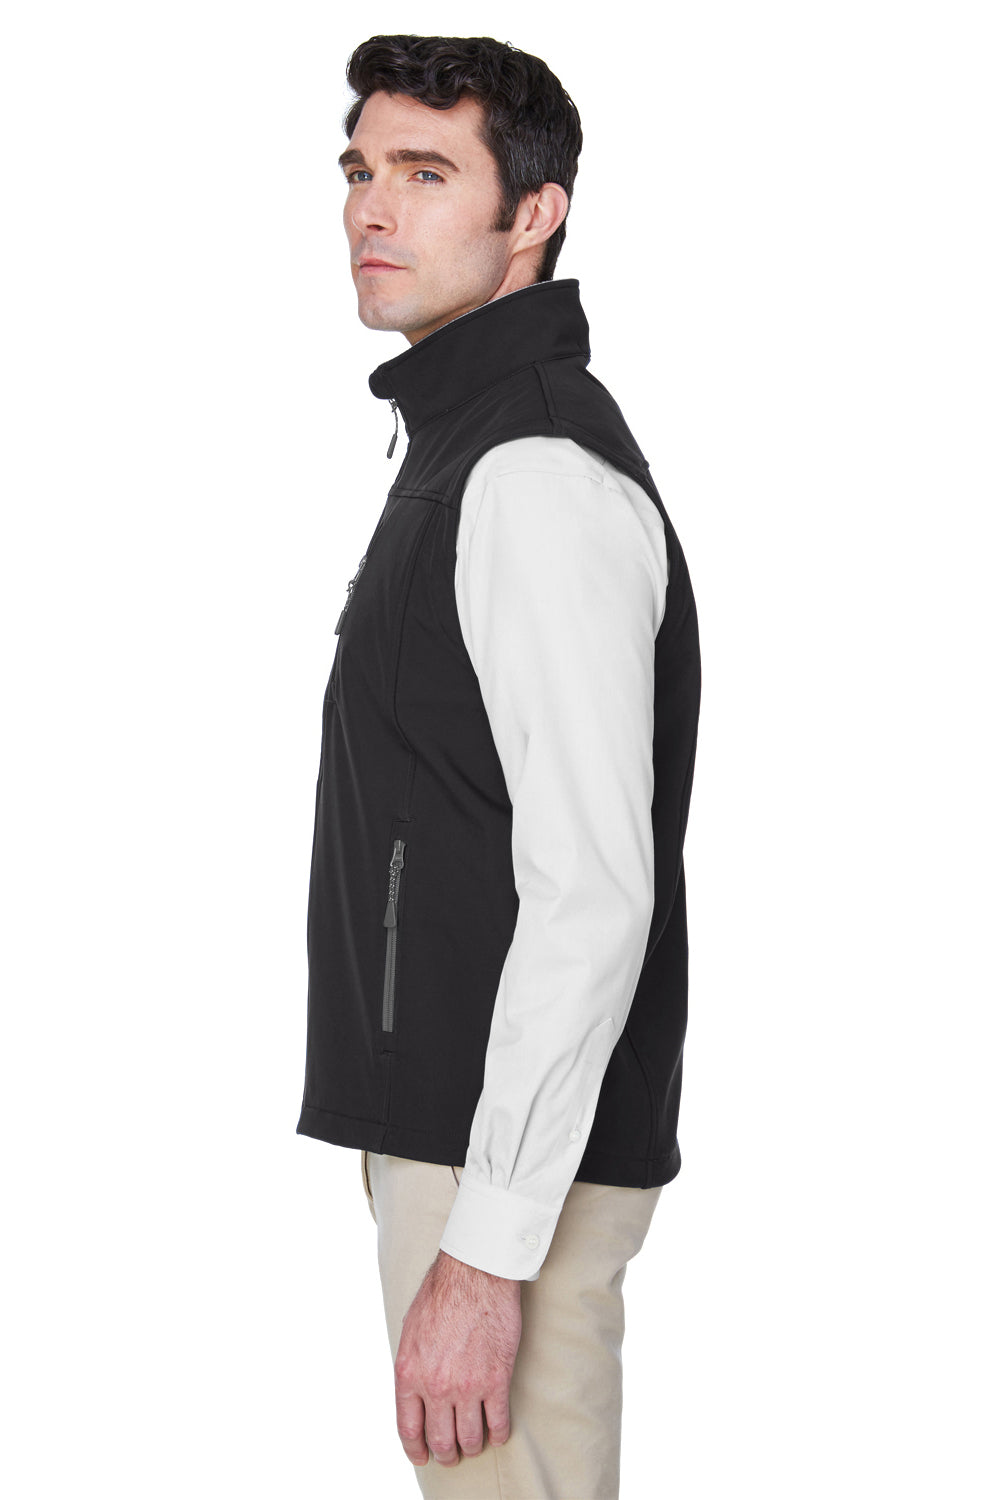 Devon & Jones D996 Mens Wind & Water Resistant Full Zip Vest Black Side